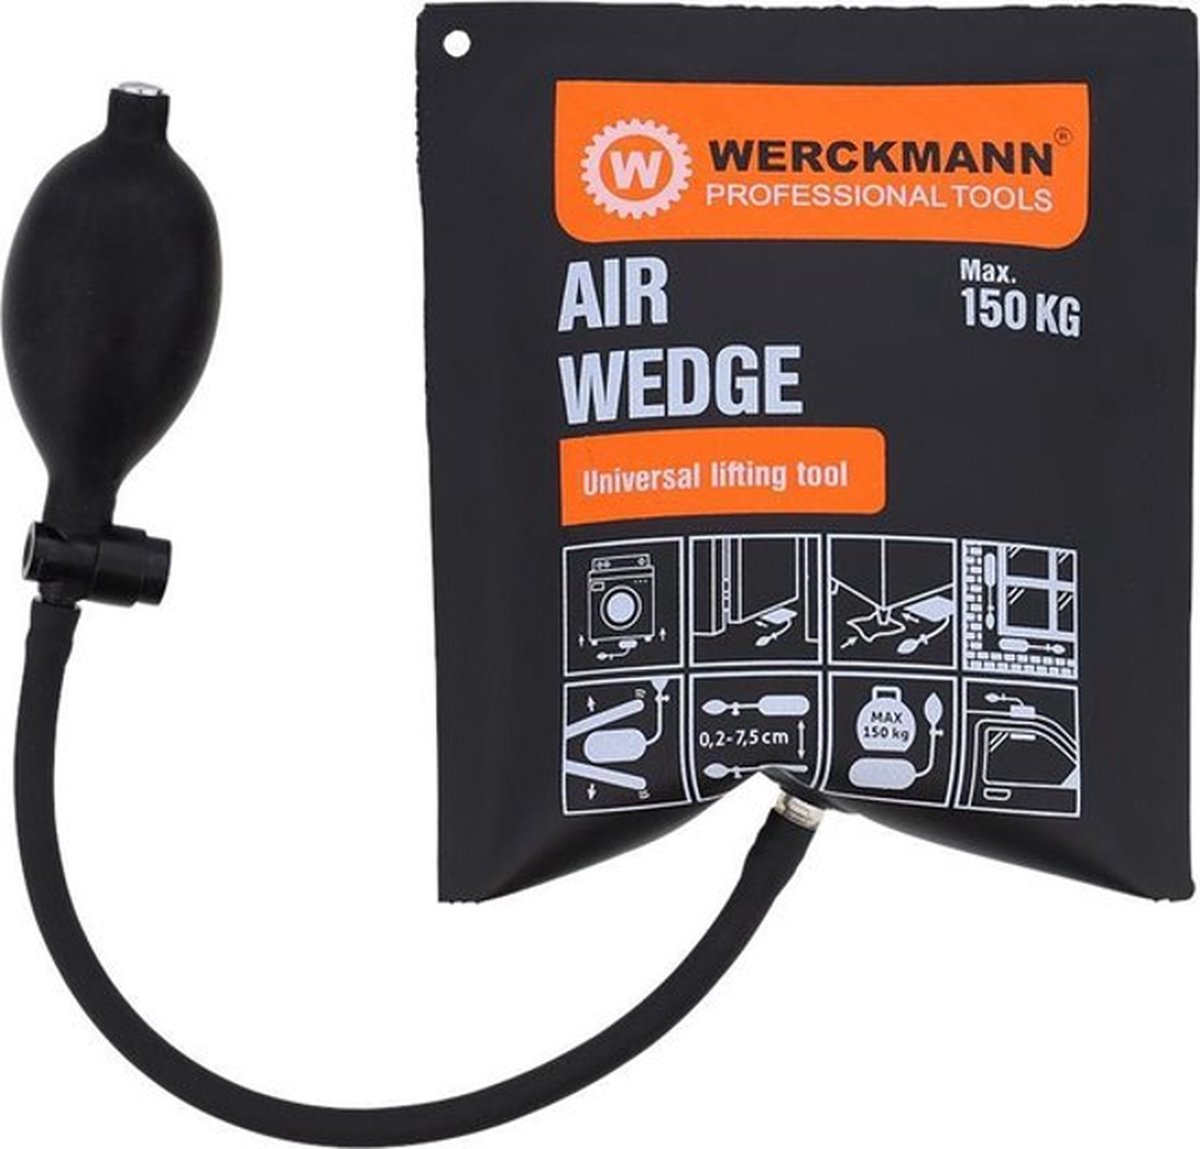 Air Wedge - Multitool - 150KG